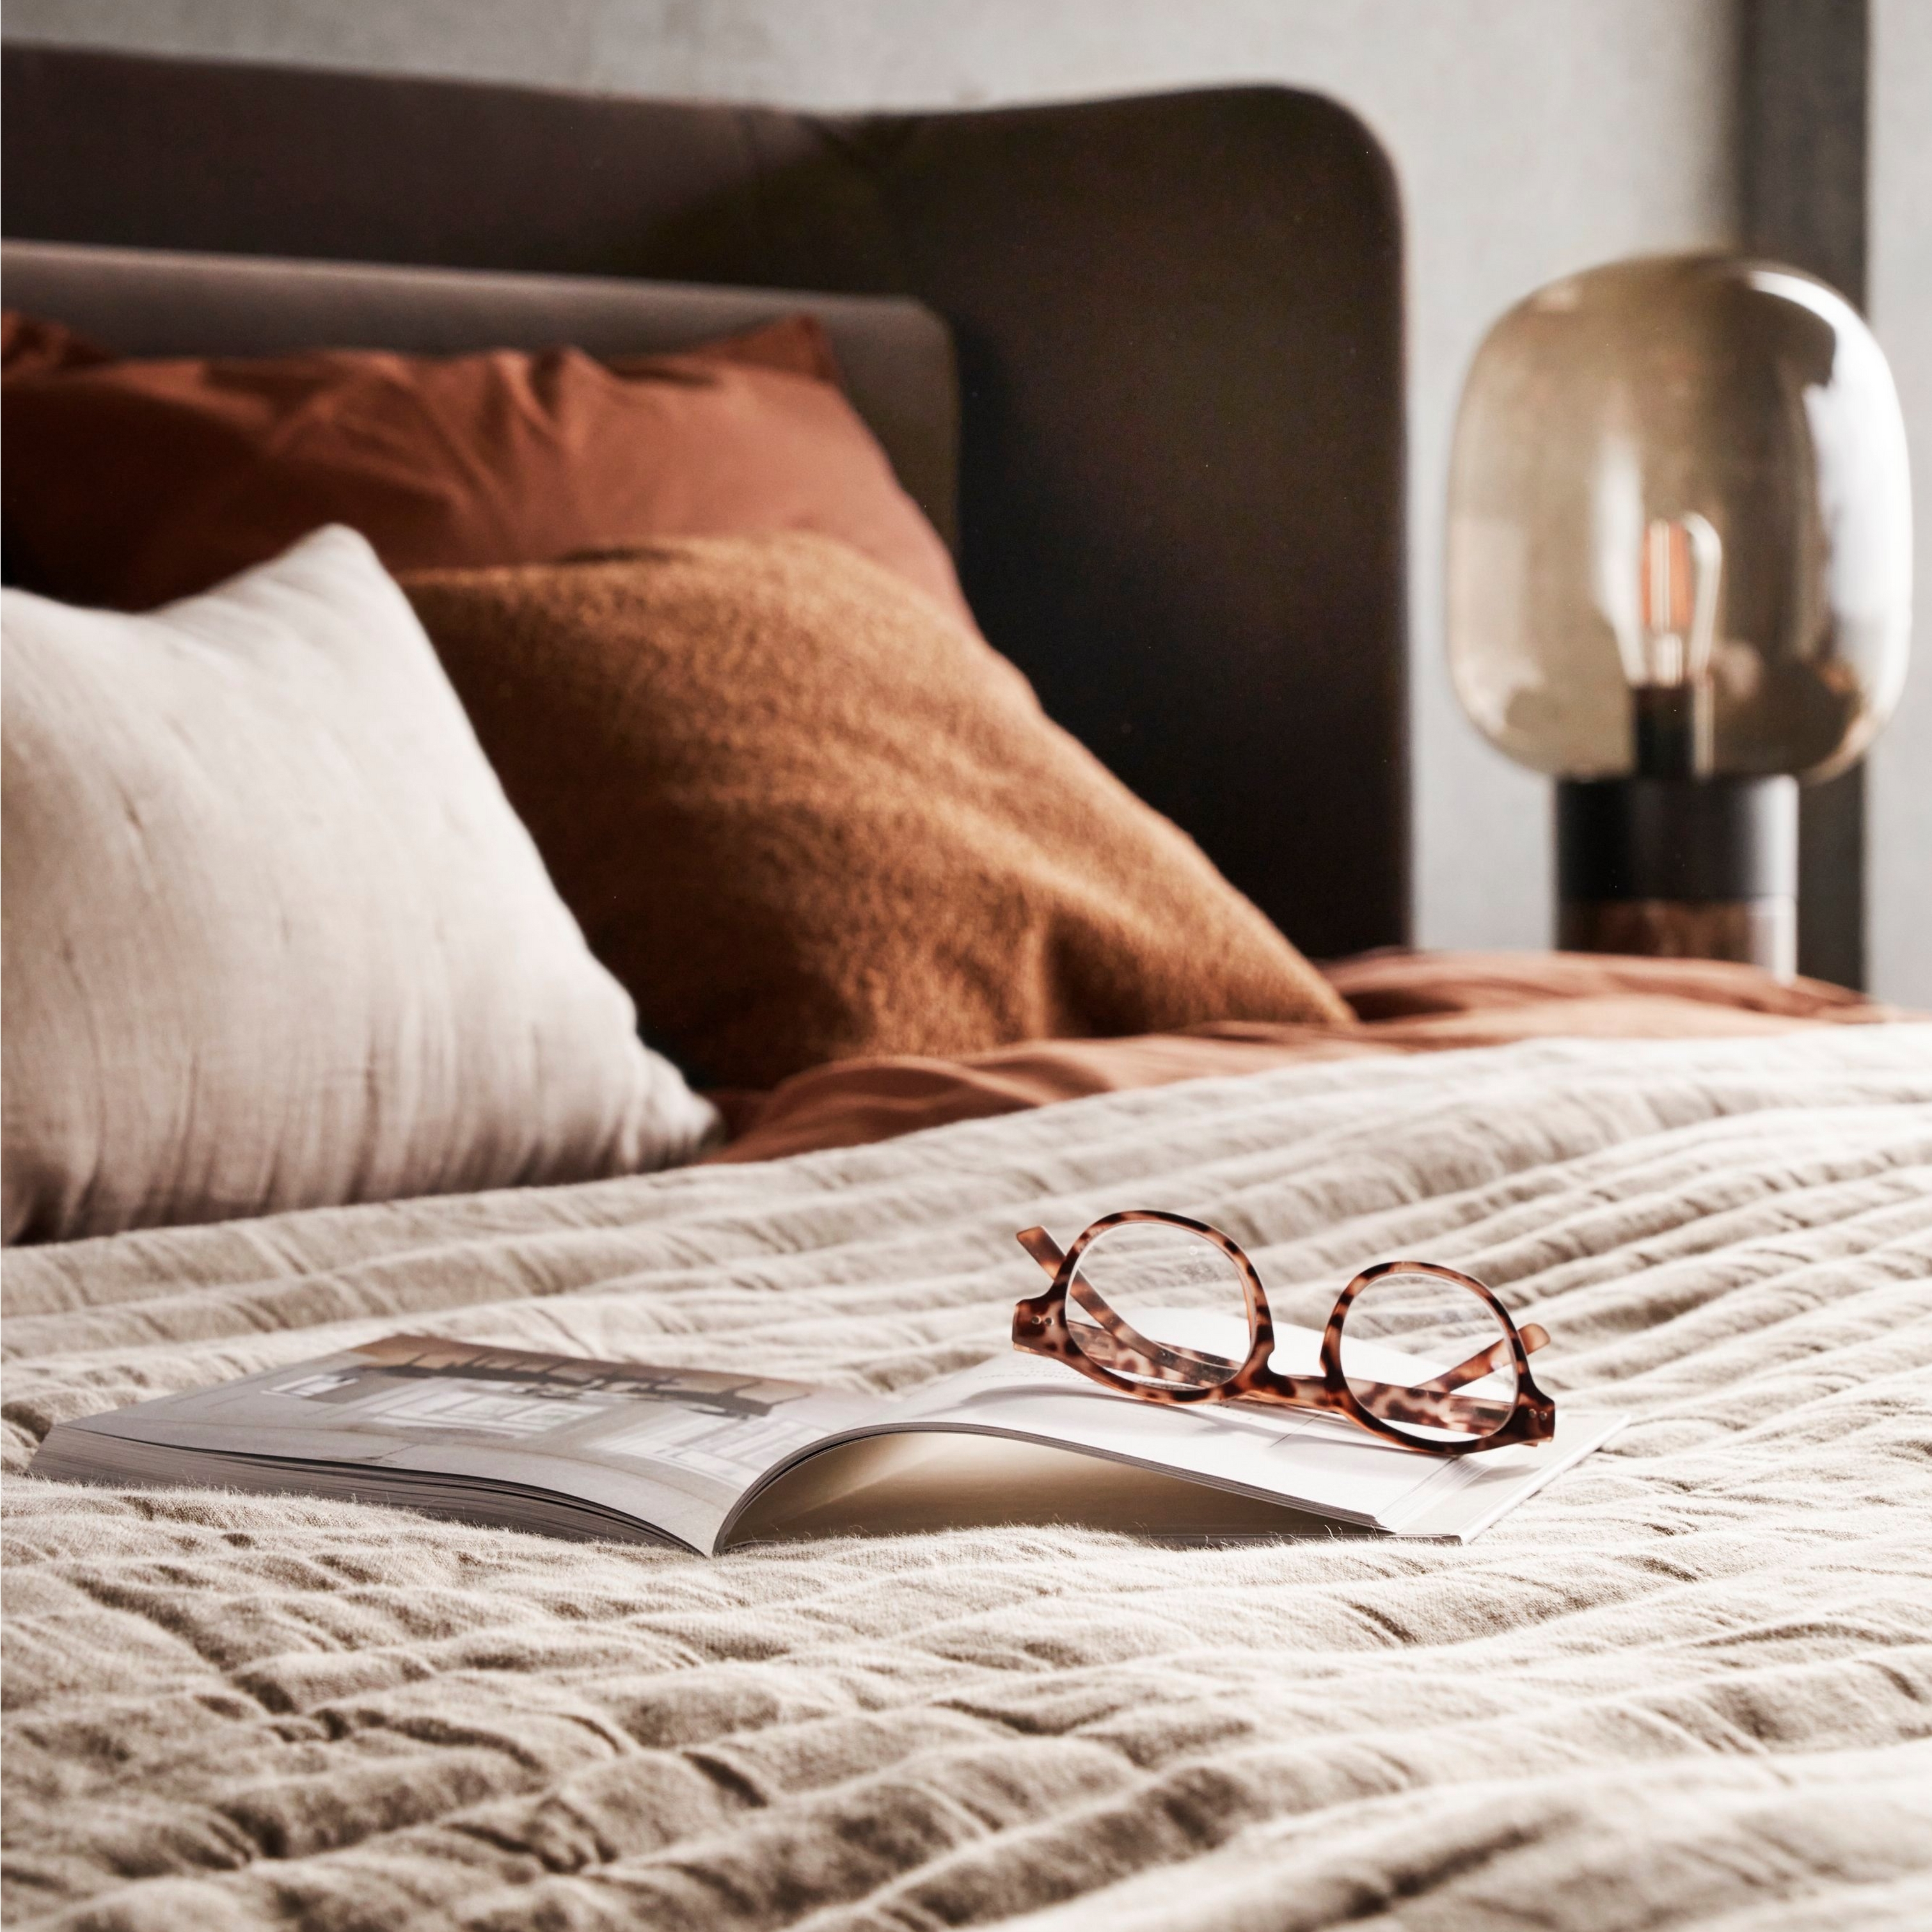 Cama con ropa de cama texturizada, lentes sobre libro abierto e iluminación suave al lado de la cama.